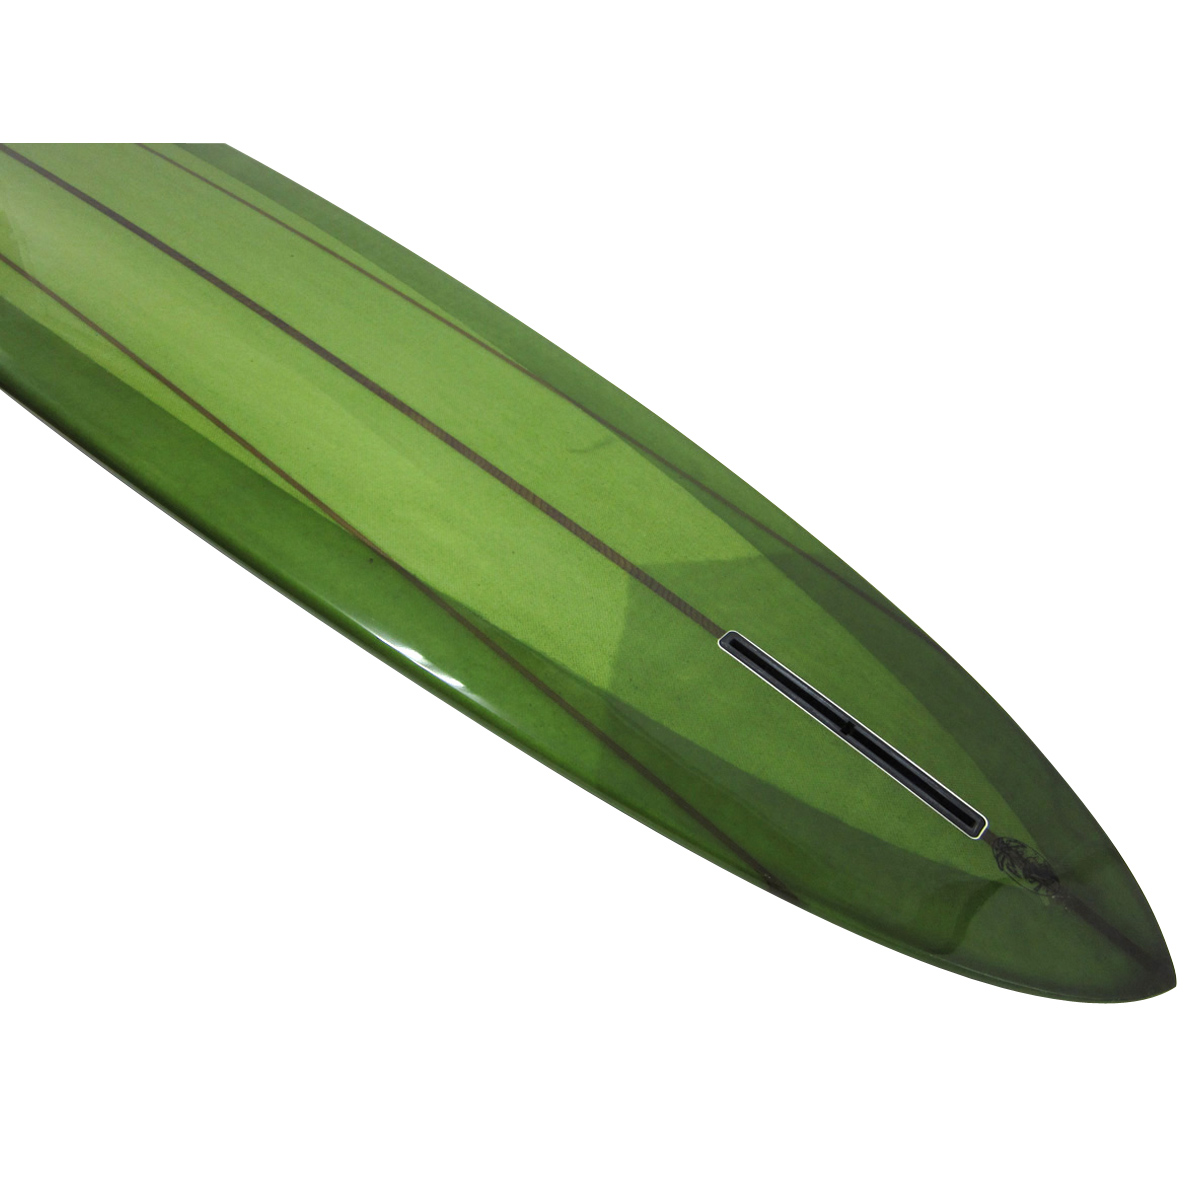 EC Surfboards  / Pelican 10`6 Glider 